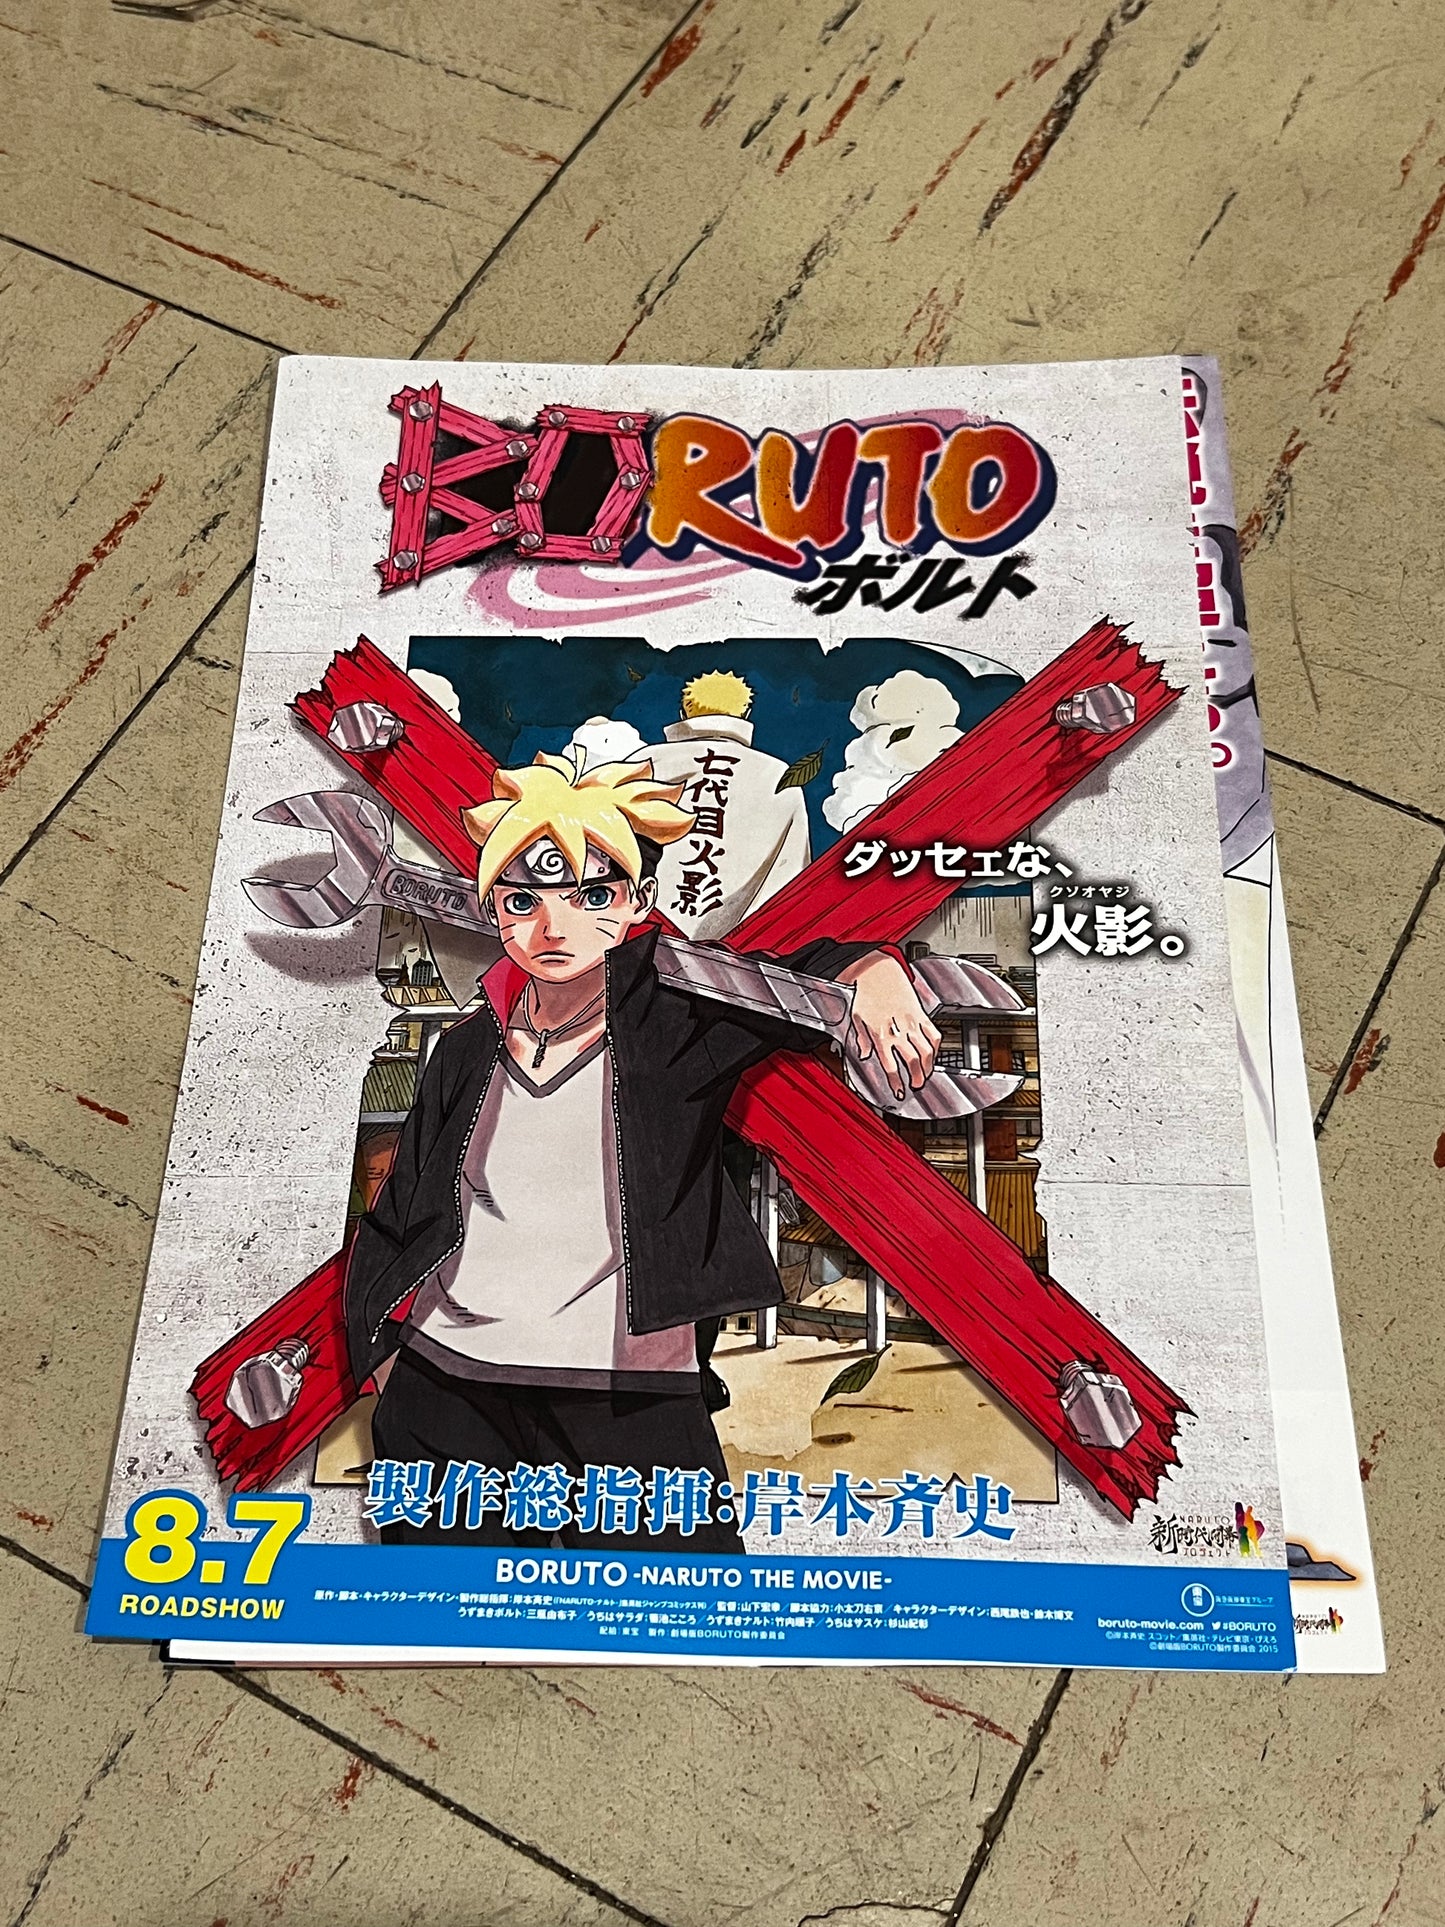 Folletos de Naruto Conjunto de 5